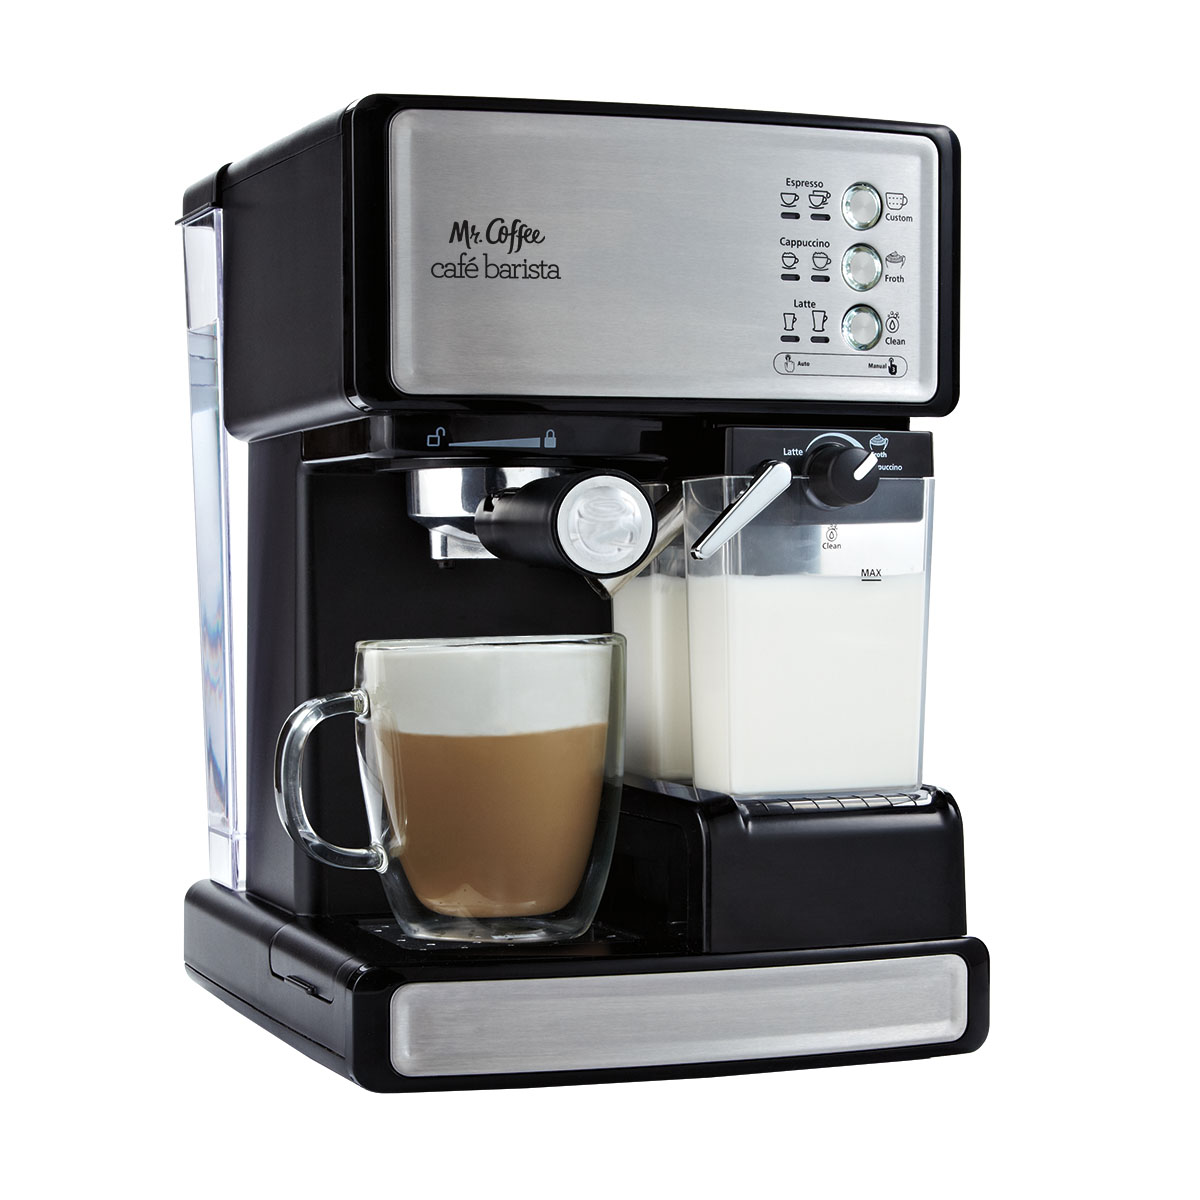 Mr. Coffee New Cafe Barista Black & Silver Premium Espresso/Latte/Cappuccino Maker - image 1 of 10